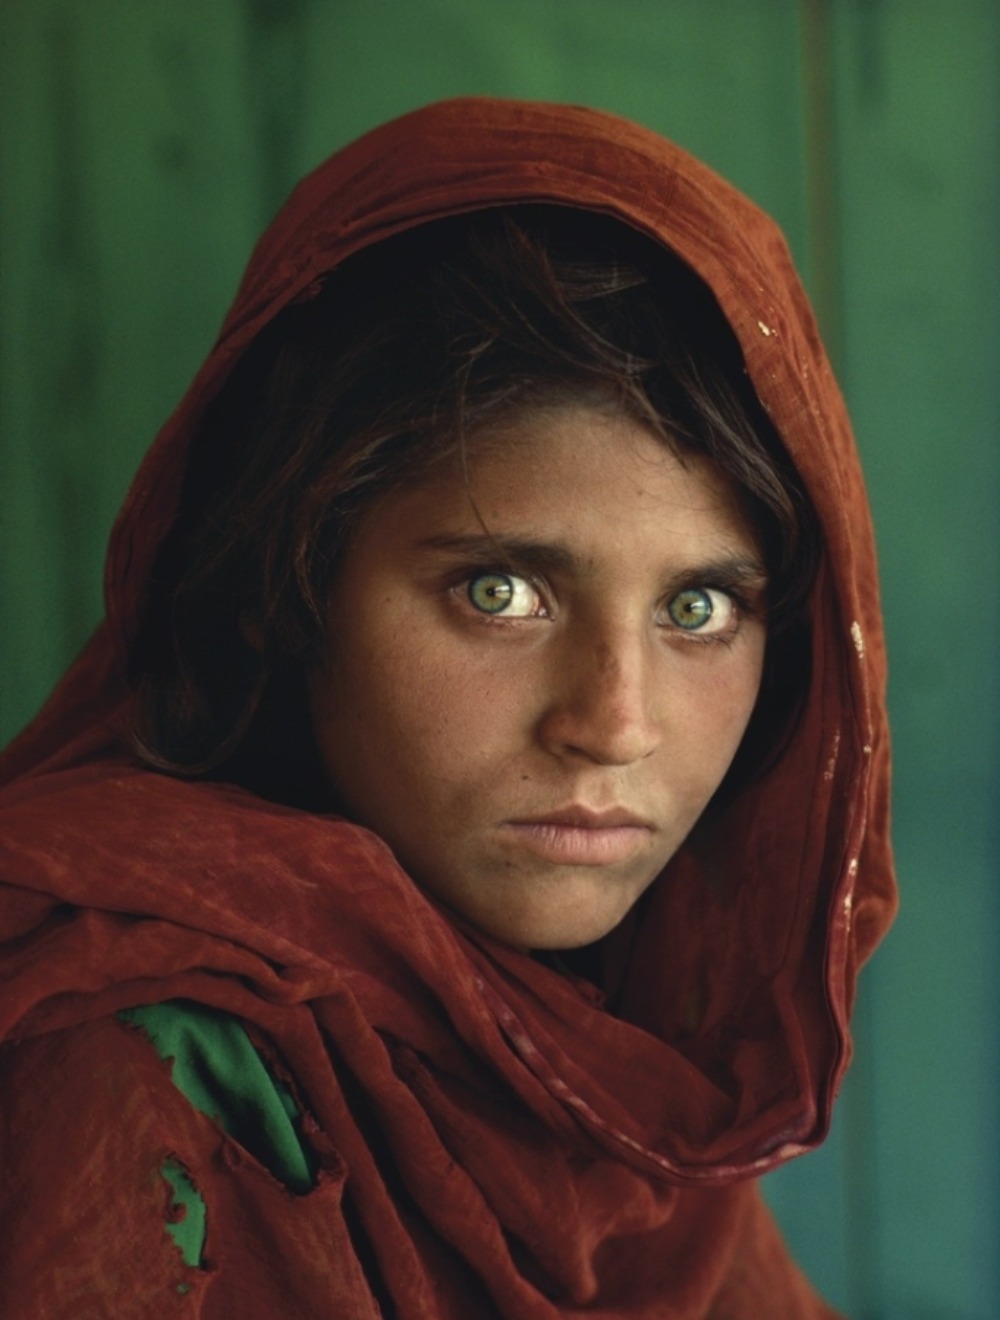 Sharbat Gula jest afgańską dziewczyną